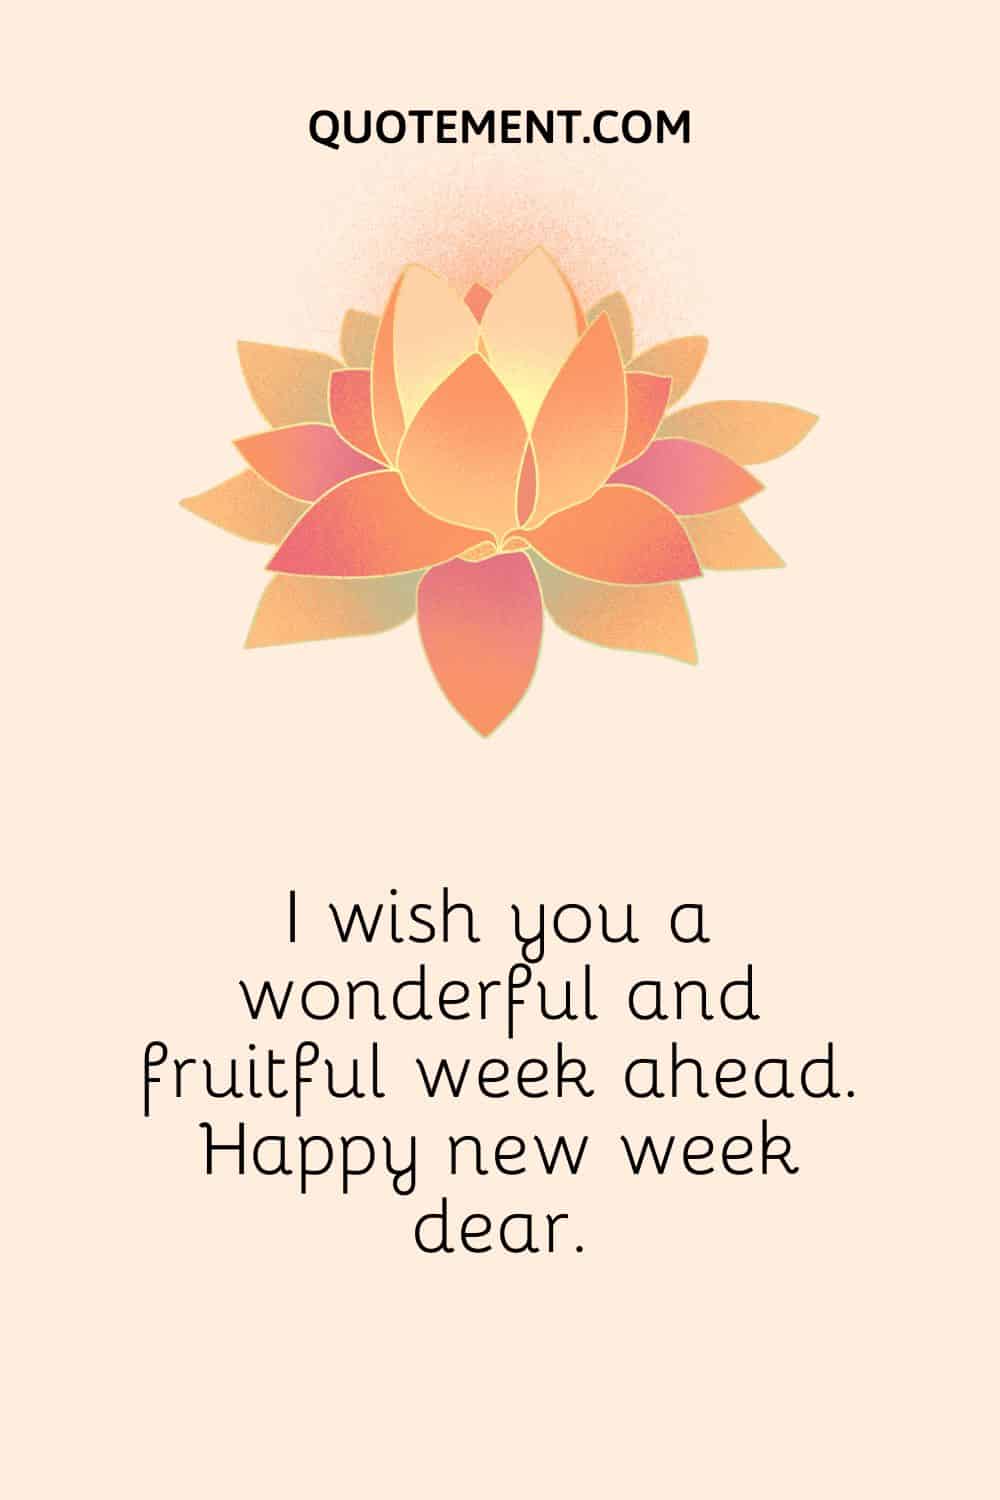 I wish you a wonderful and fruitful week ahead.